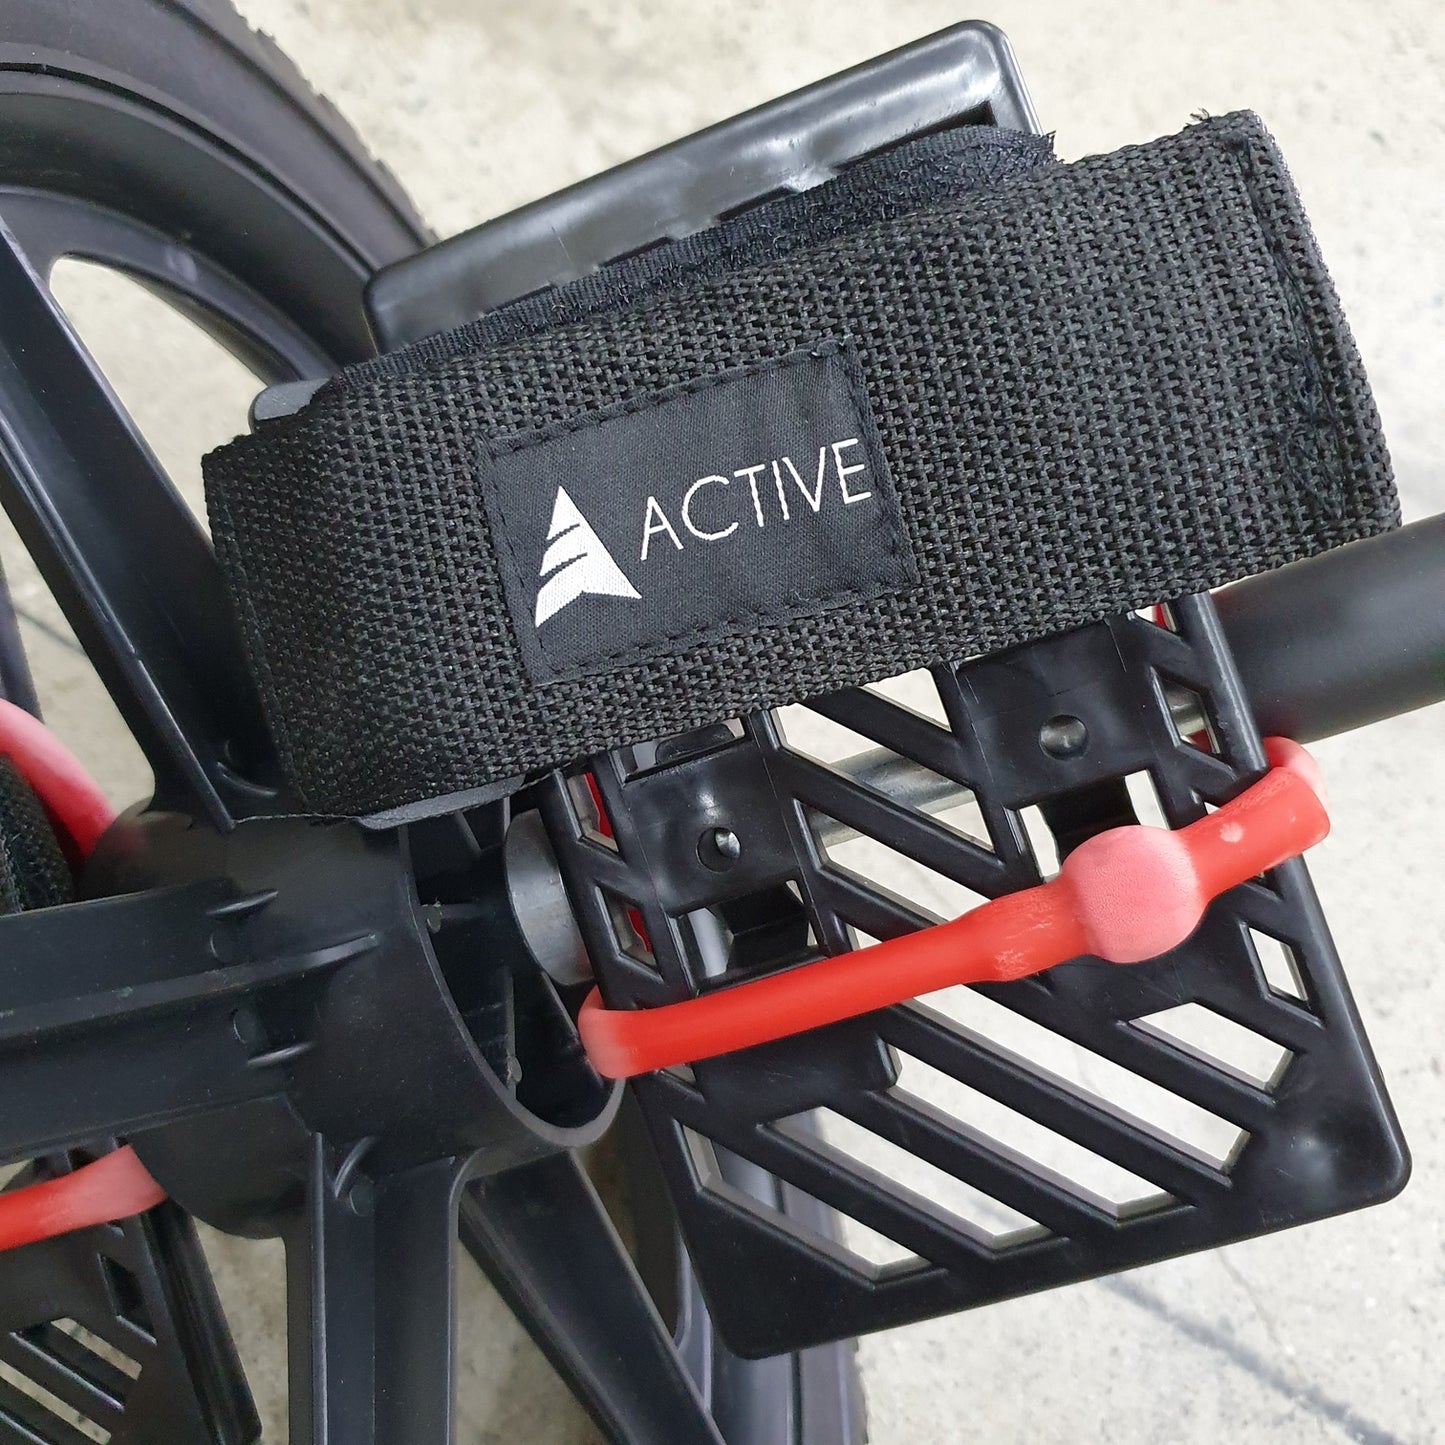 Active Ab Wheel